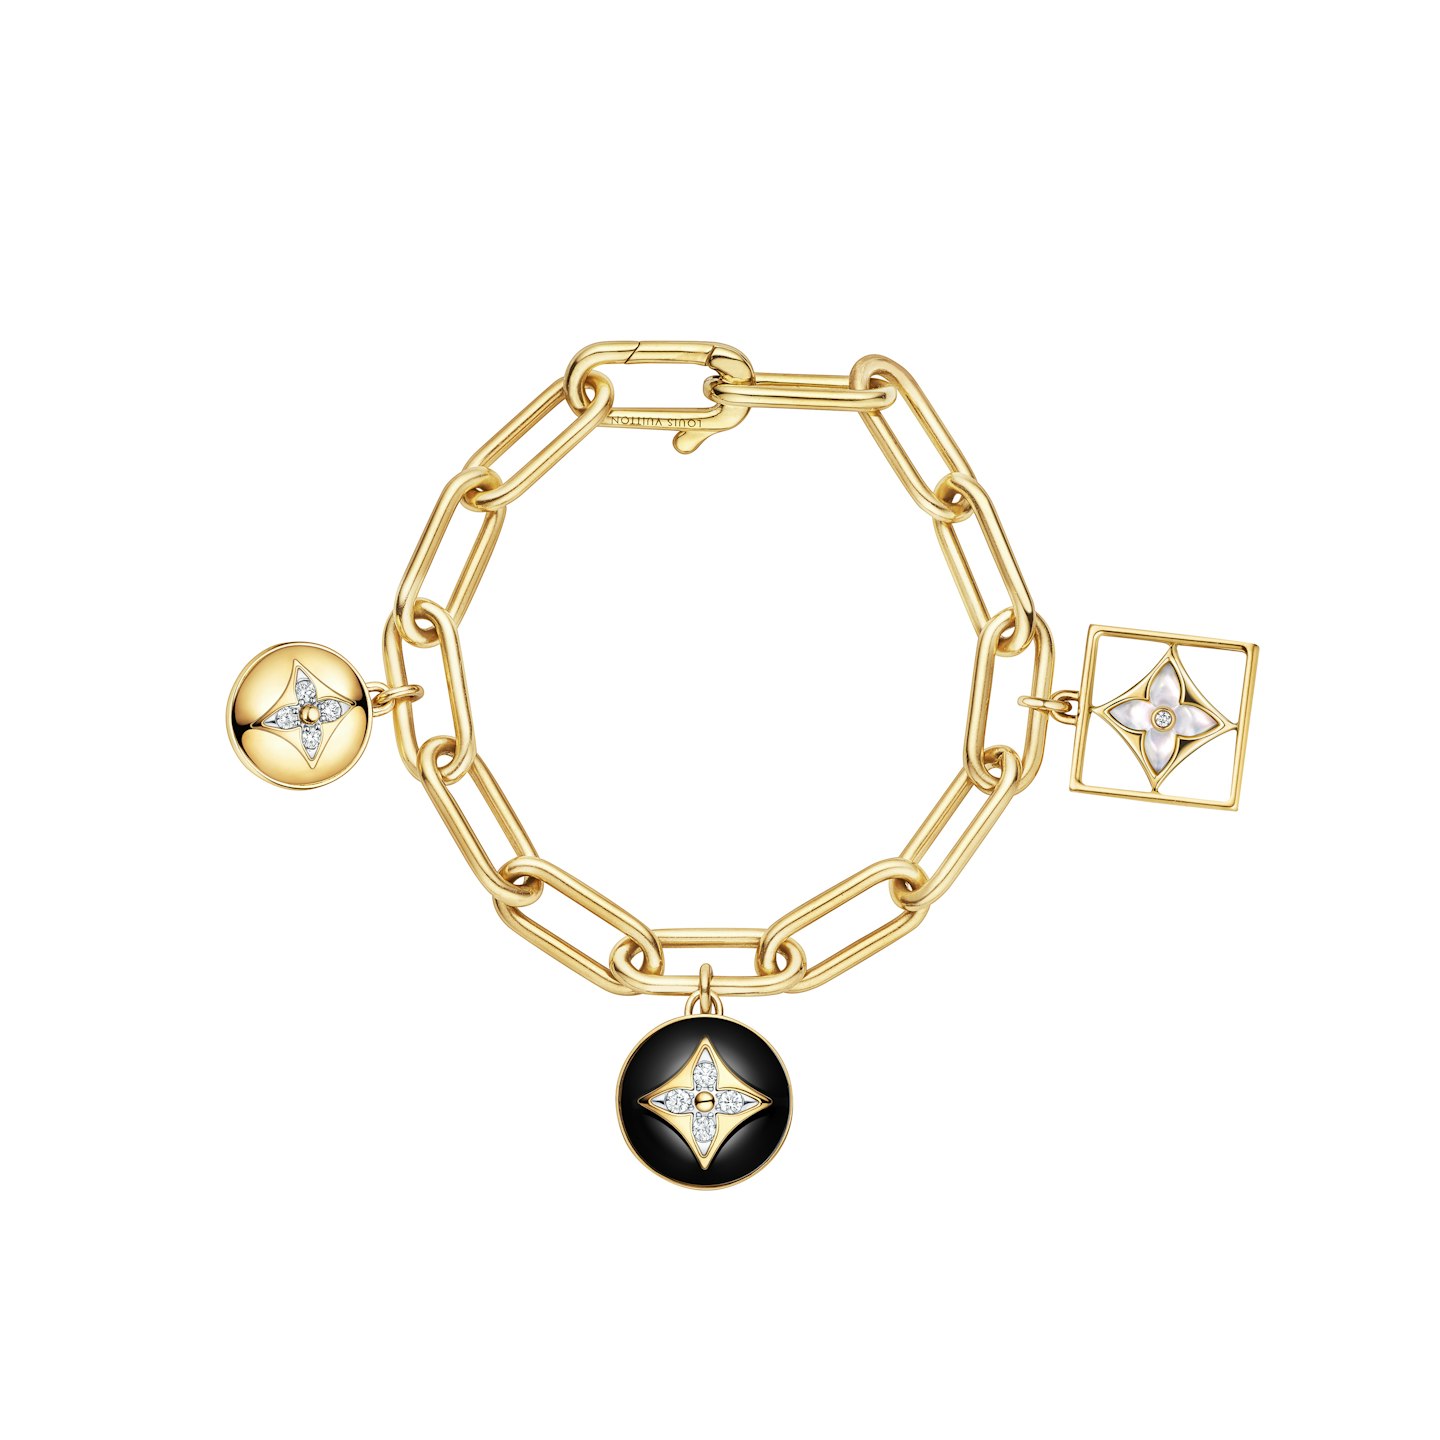 Louis Vuitton's B Blossom bracelet 